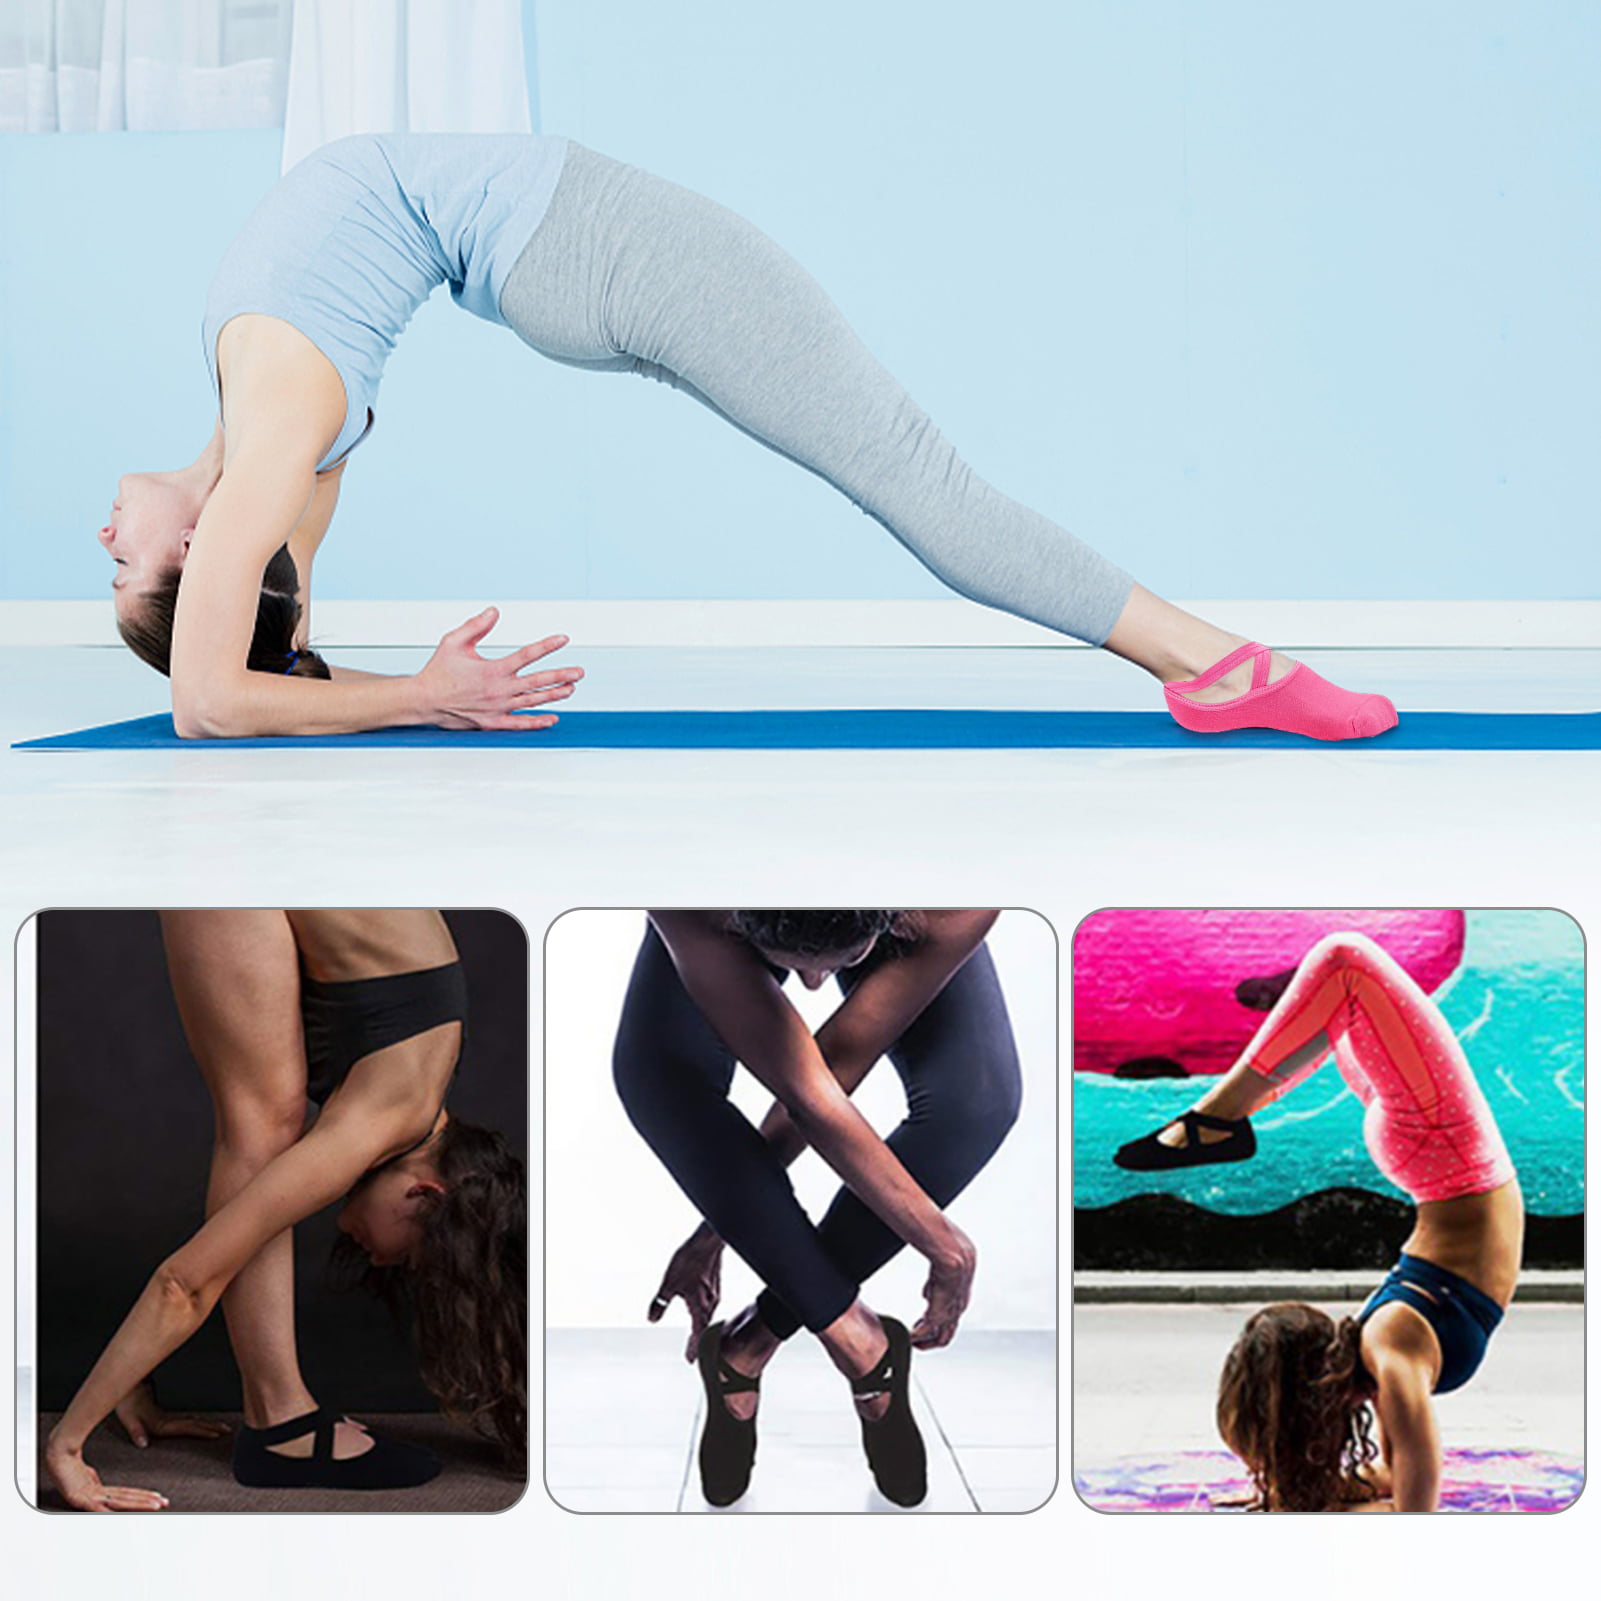 Yoga Socks Women Contrast Color Cotton Silicone Non-slip Pilates